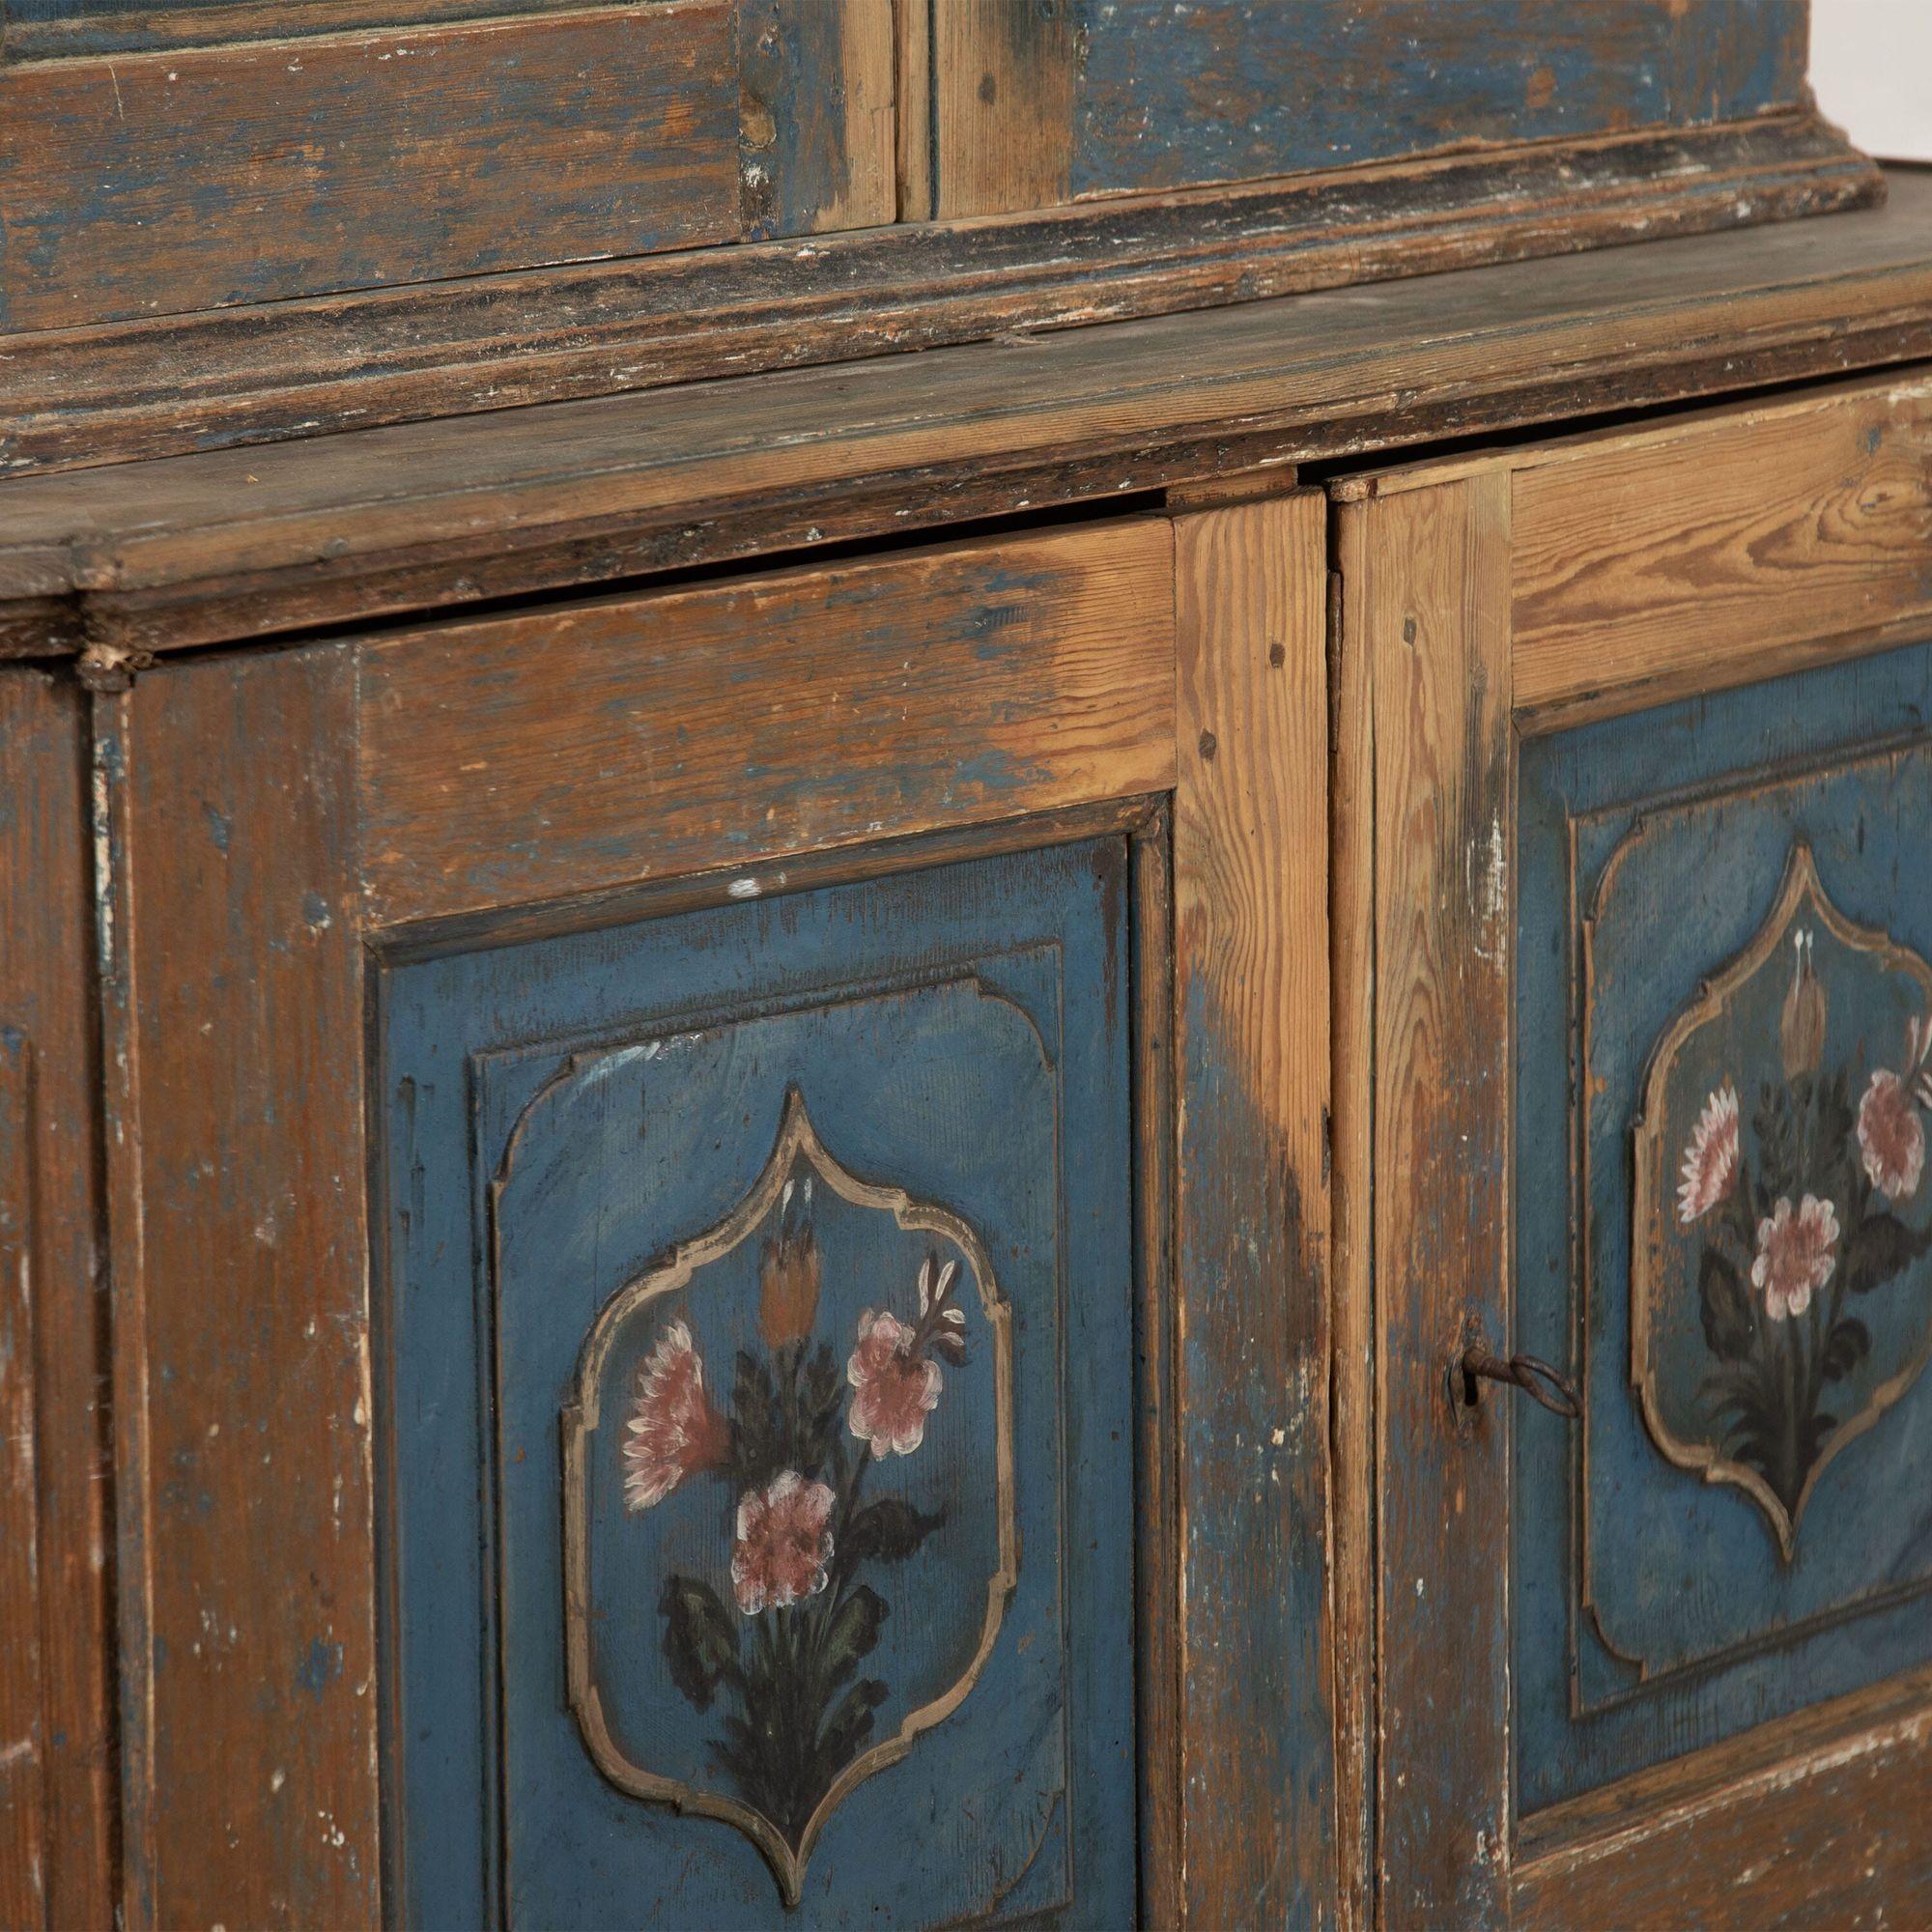 Zweiteiliger schwedischer Schrank aus dem späten 18. Jahrhundert mit Originaldekor.
Der Schrank hat eine ungewöhnliche Form mit schönen konstruktiven Details und traditionell gemalten Verzierungen.